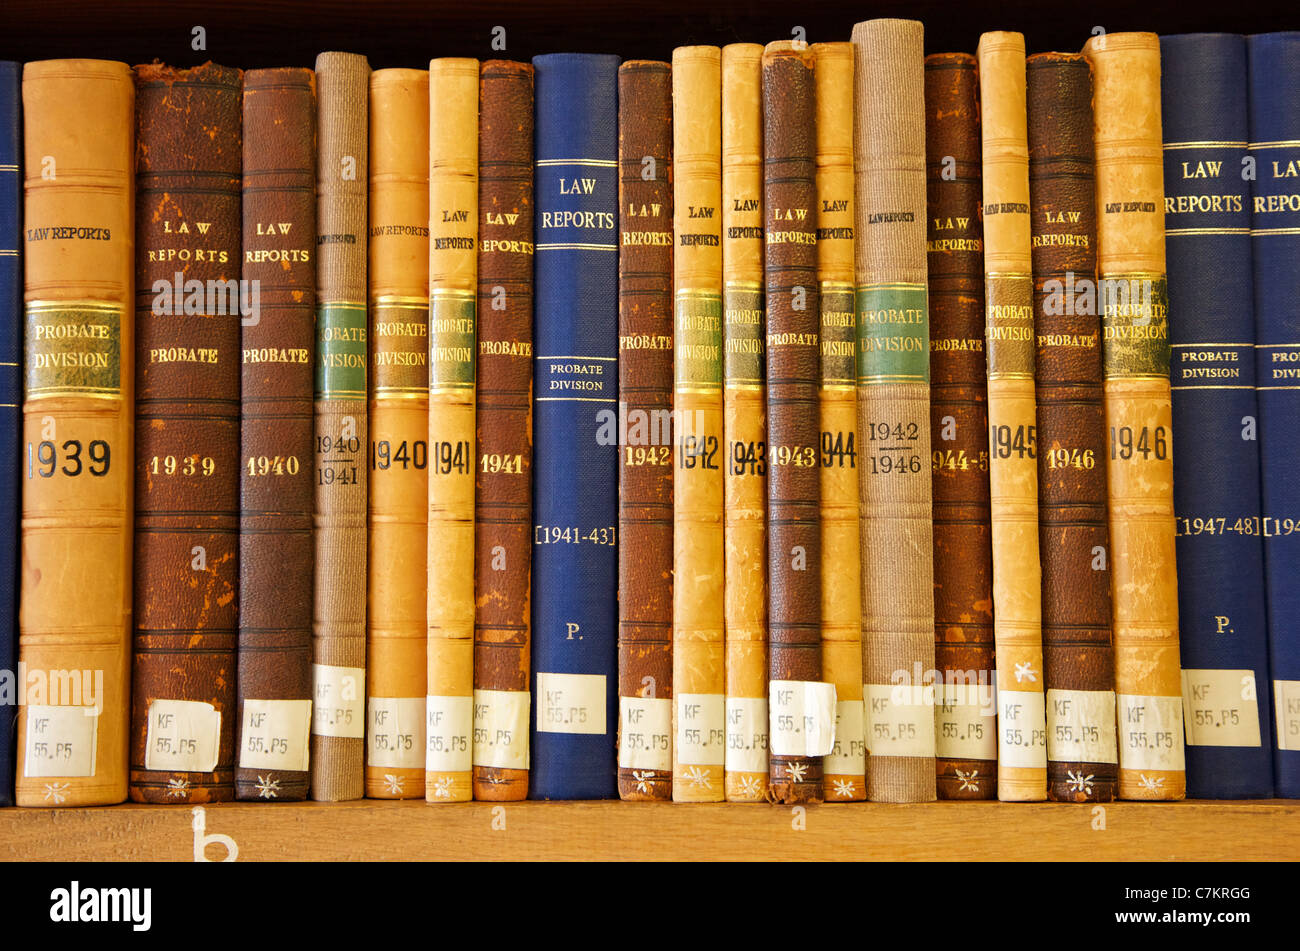 Bänden von Gesetz berichten von 1939 bis 1947 auf einem Bücherregal Stockfoto